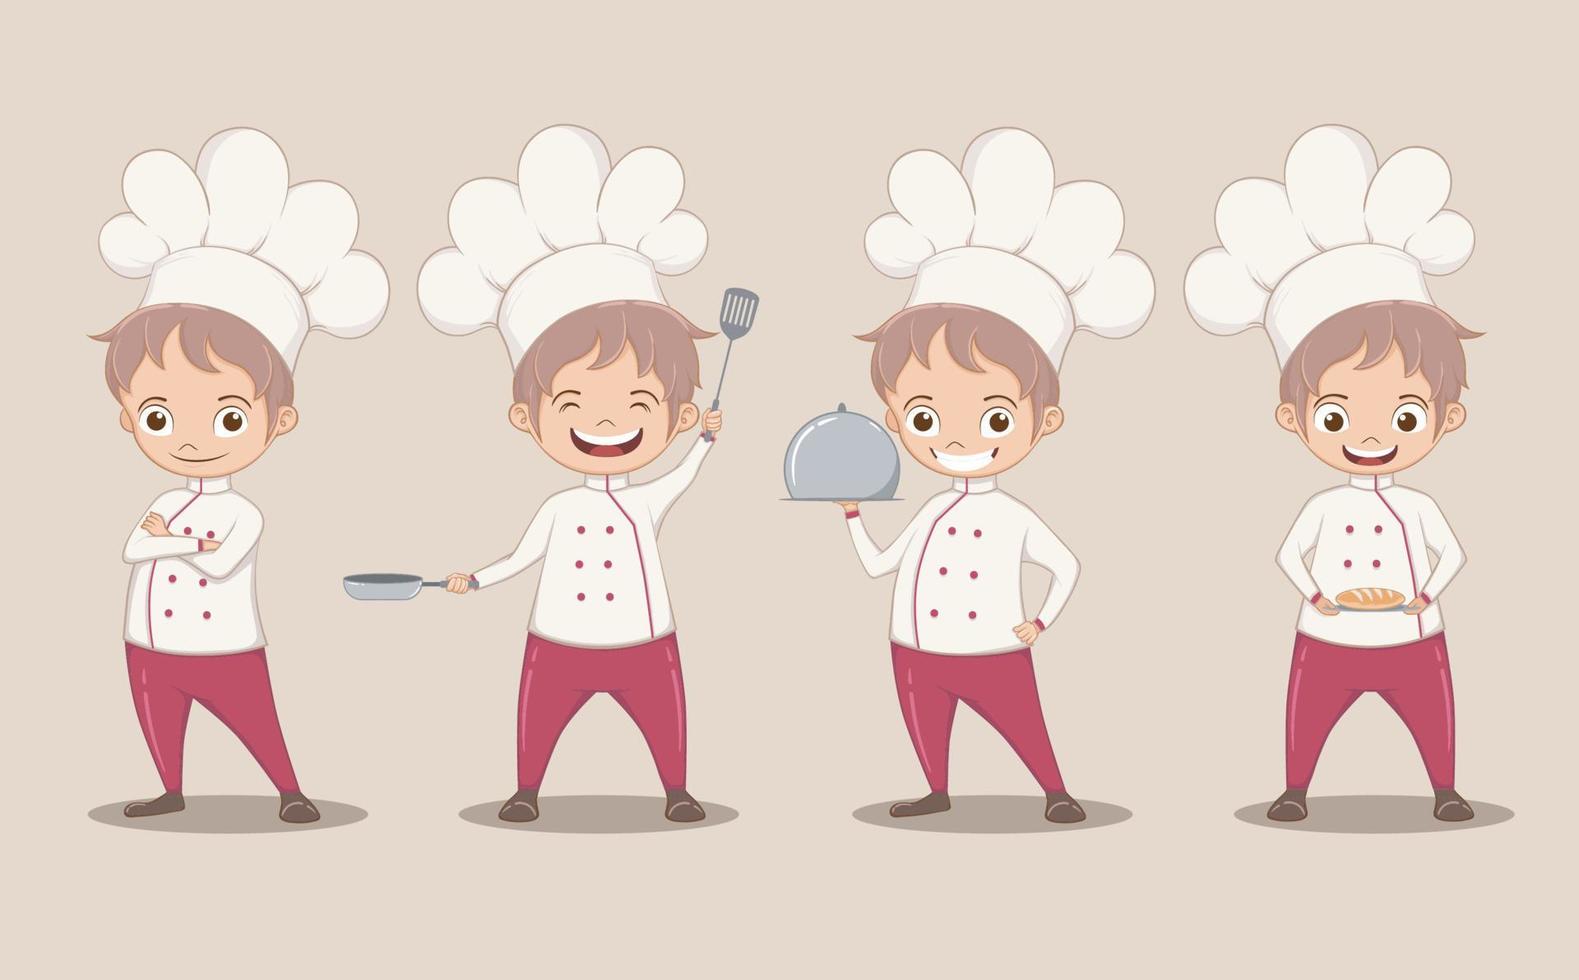 söt kock pojke karaktär i fyra verkan poserar, vektor illustration i tecknad serie stil